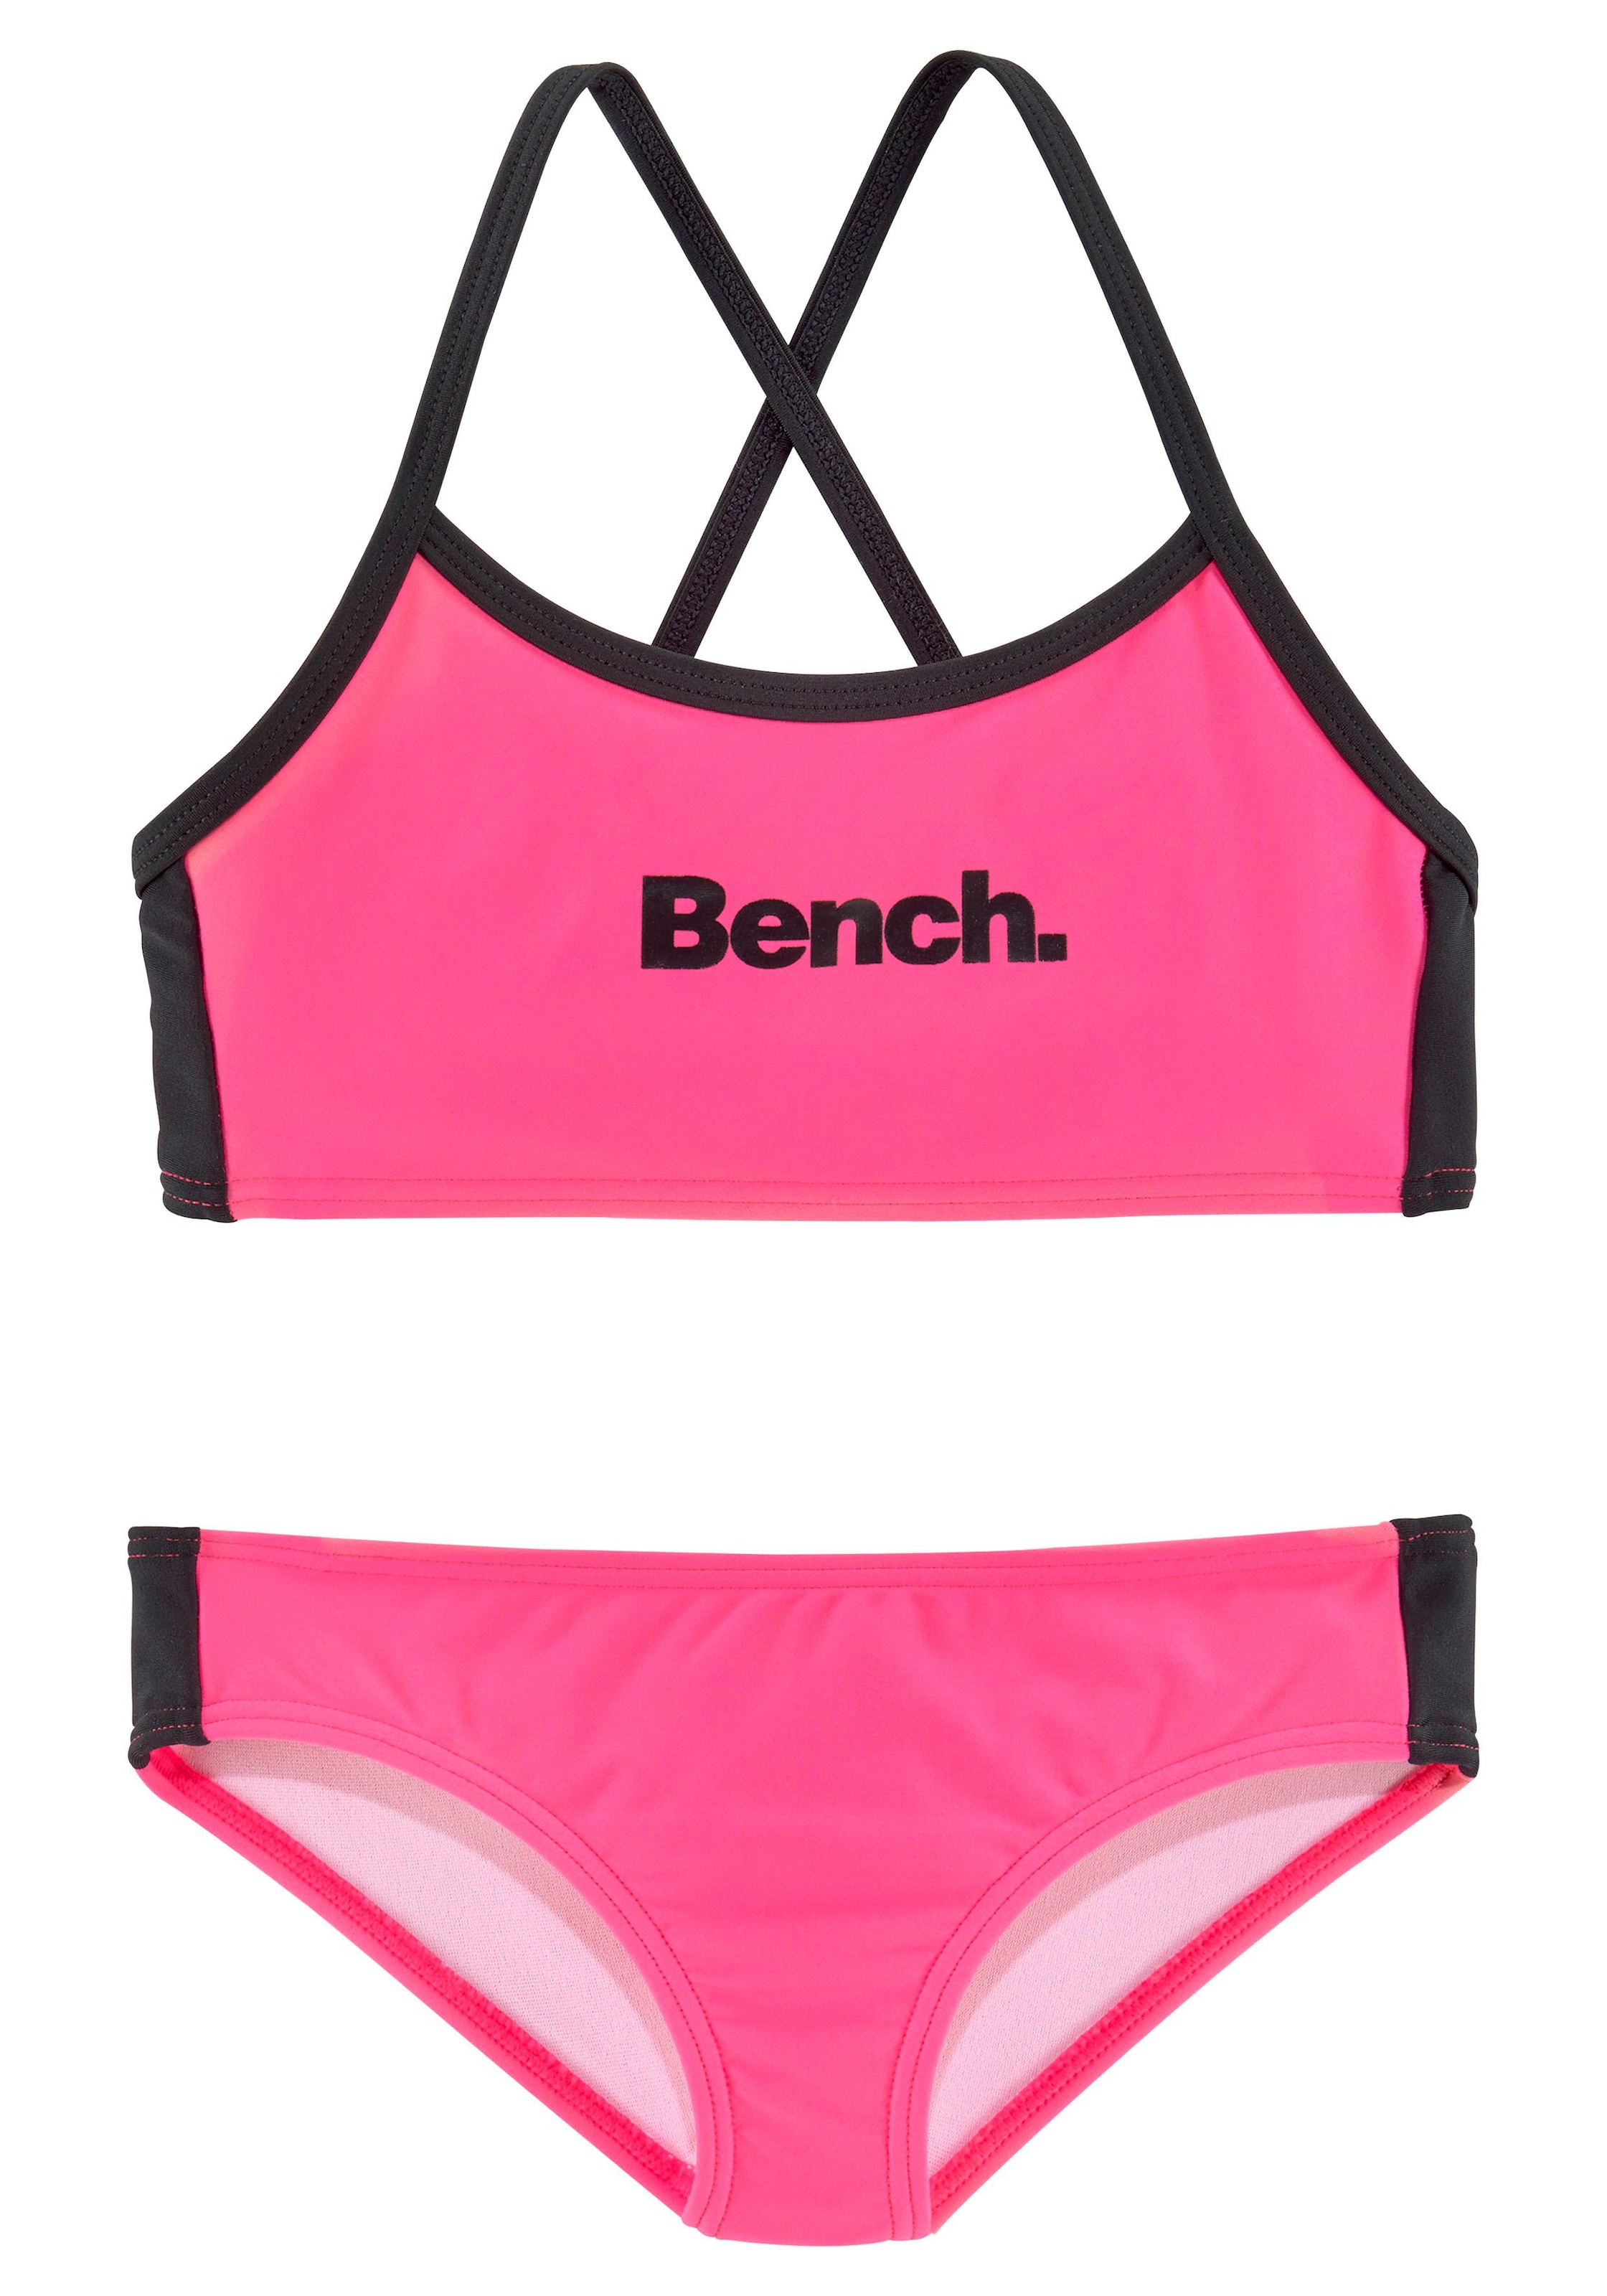 Bench. Bustier-Bikini, mit gekreuzten bei Trägern OTTO